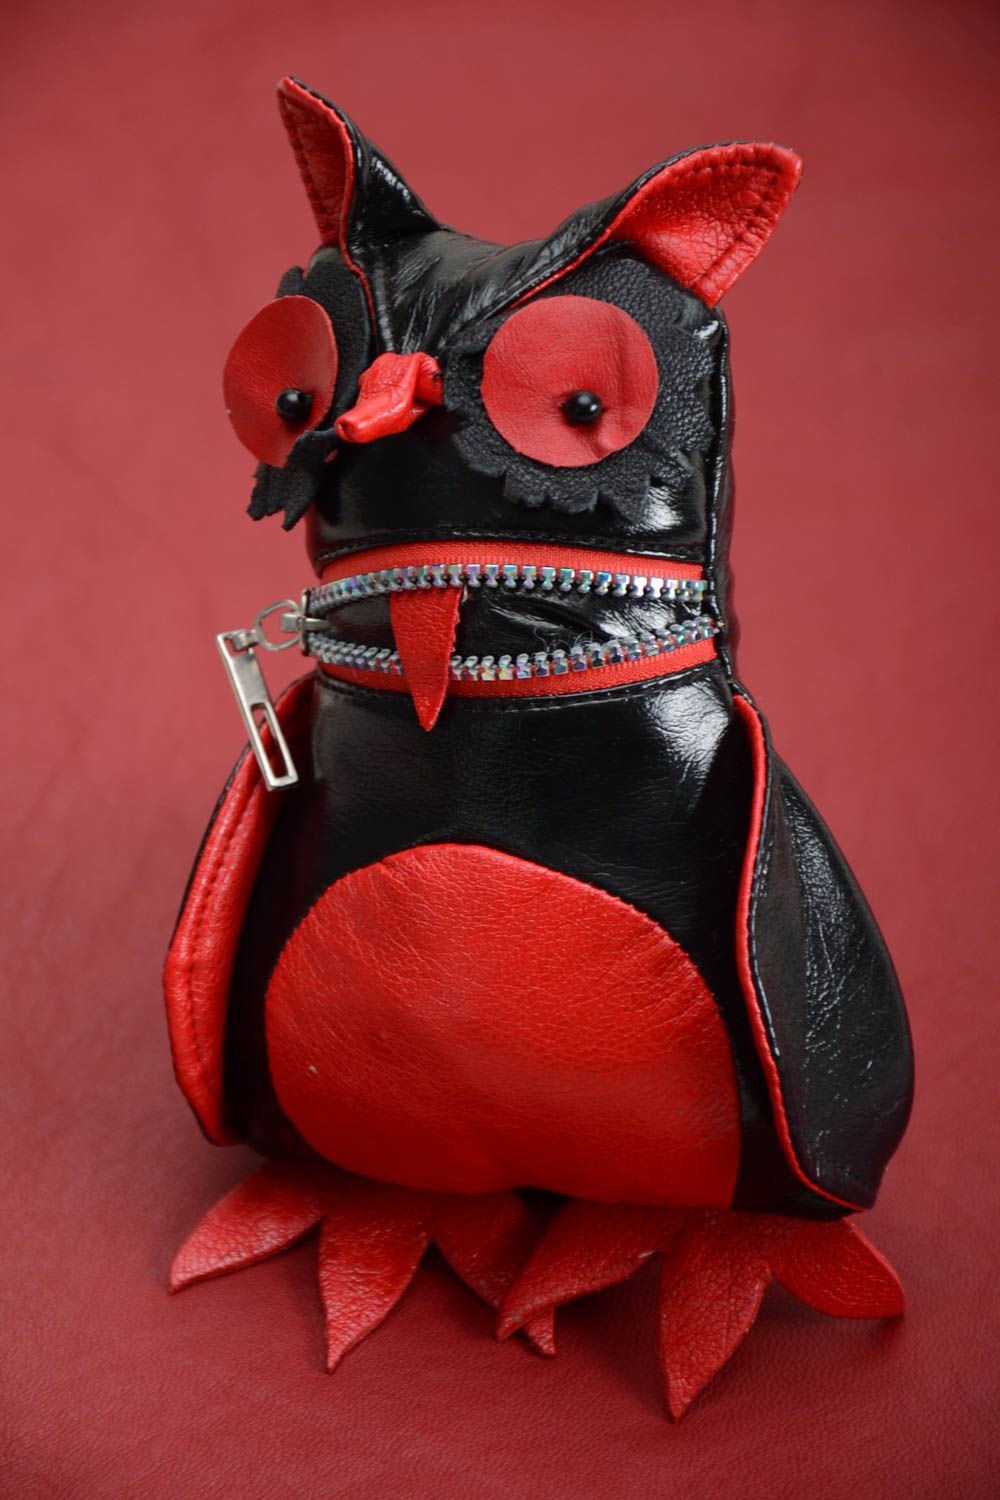 Handmade Kuscheltier Eule aus Leder Haus Deko kreatives Spielzeug künstlerisch foto 1